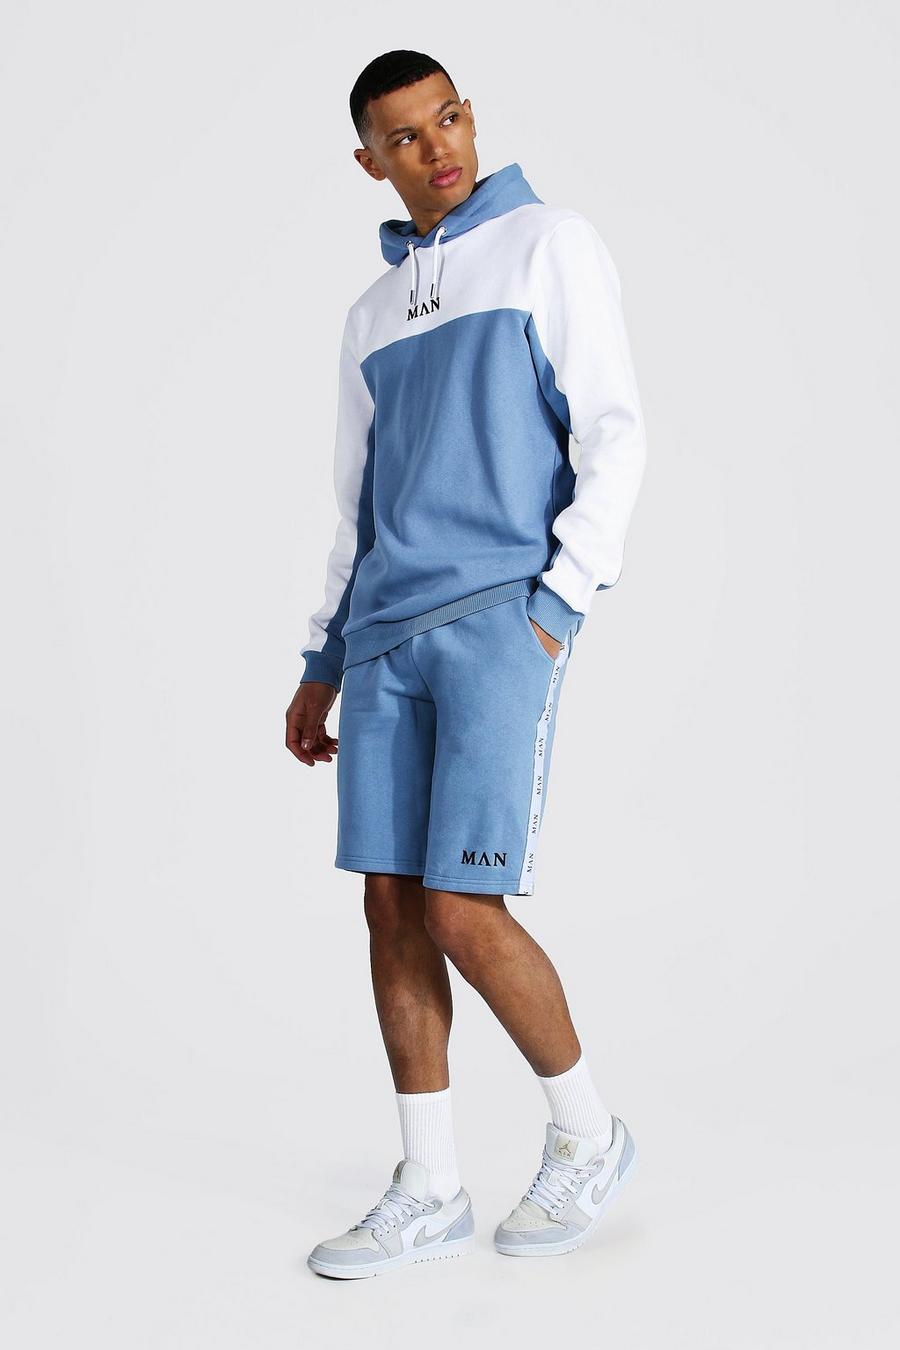 Dusty blue Tall - MAN Träningsoverall med shorts, blockfärger och kantband image number 1